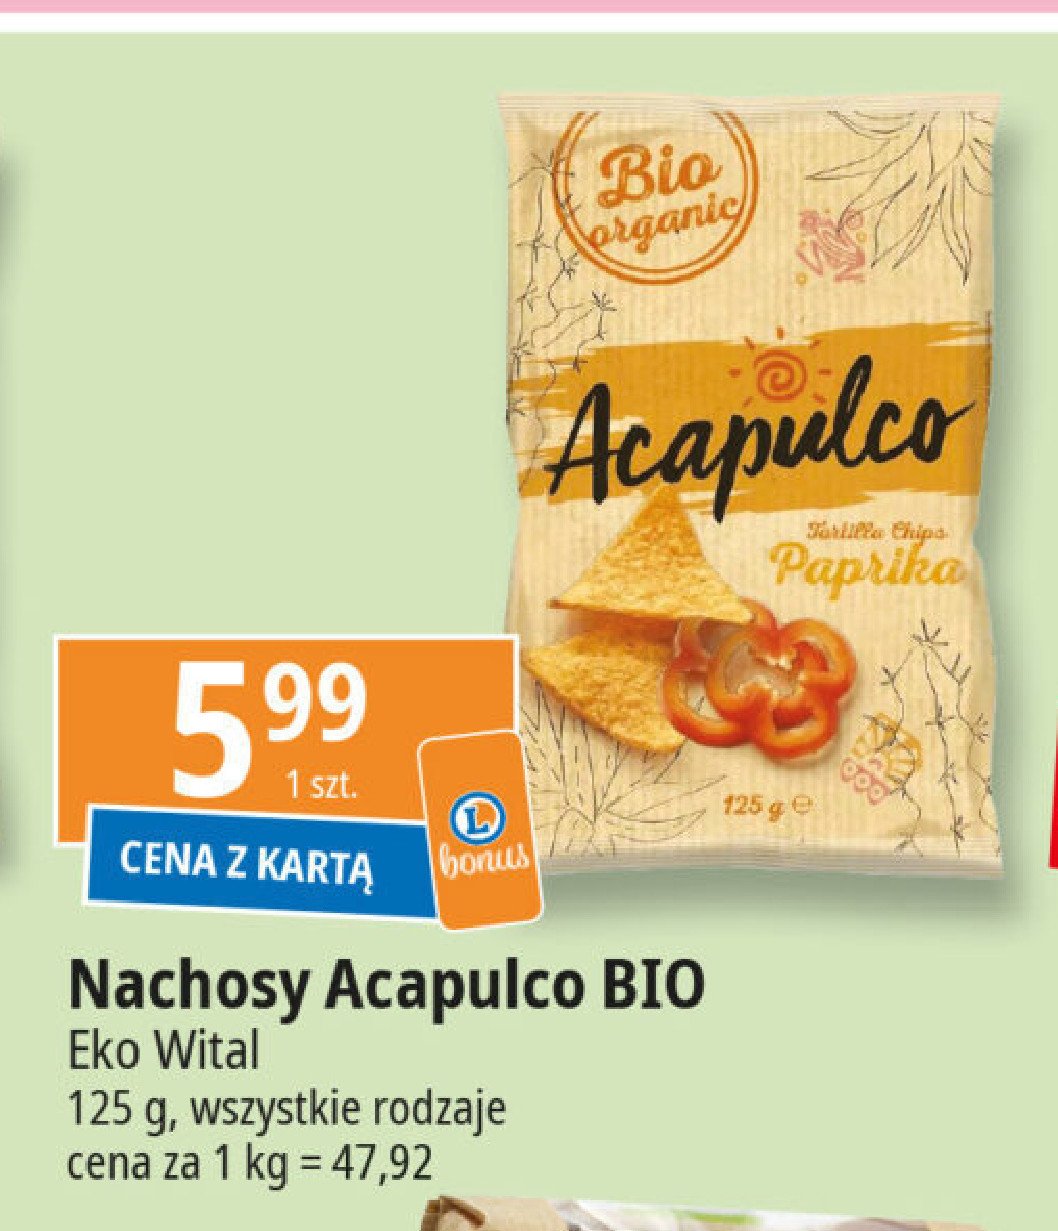 Nachosy paprykowe bio Acapulco promocja w Leclerc